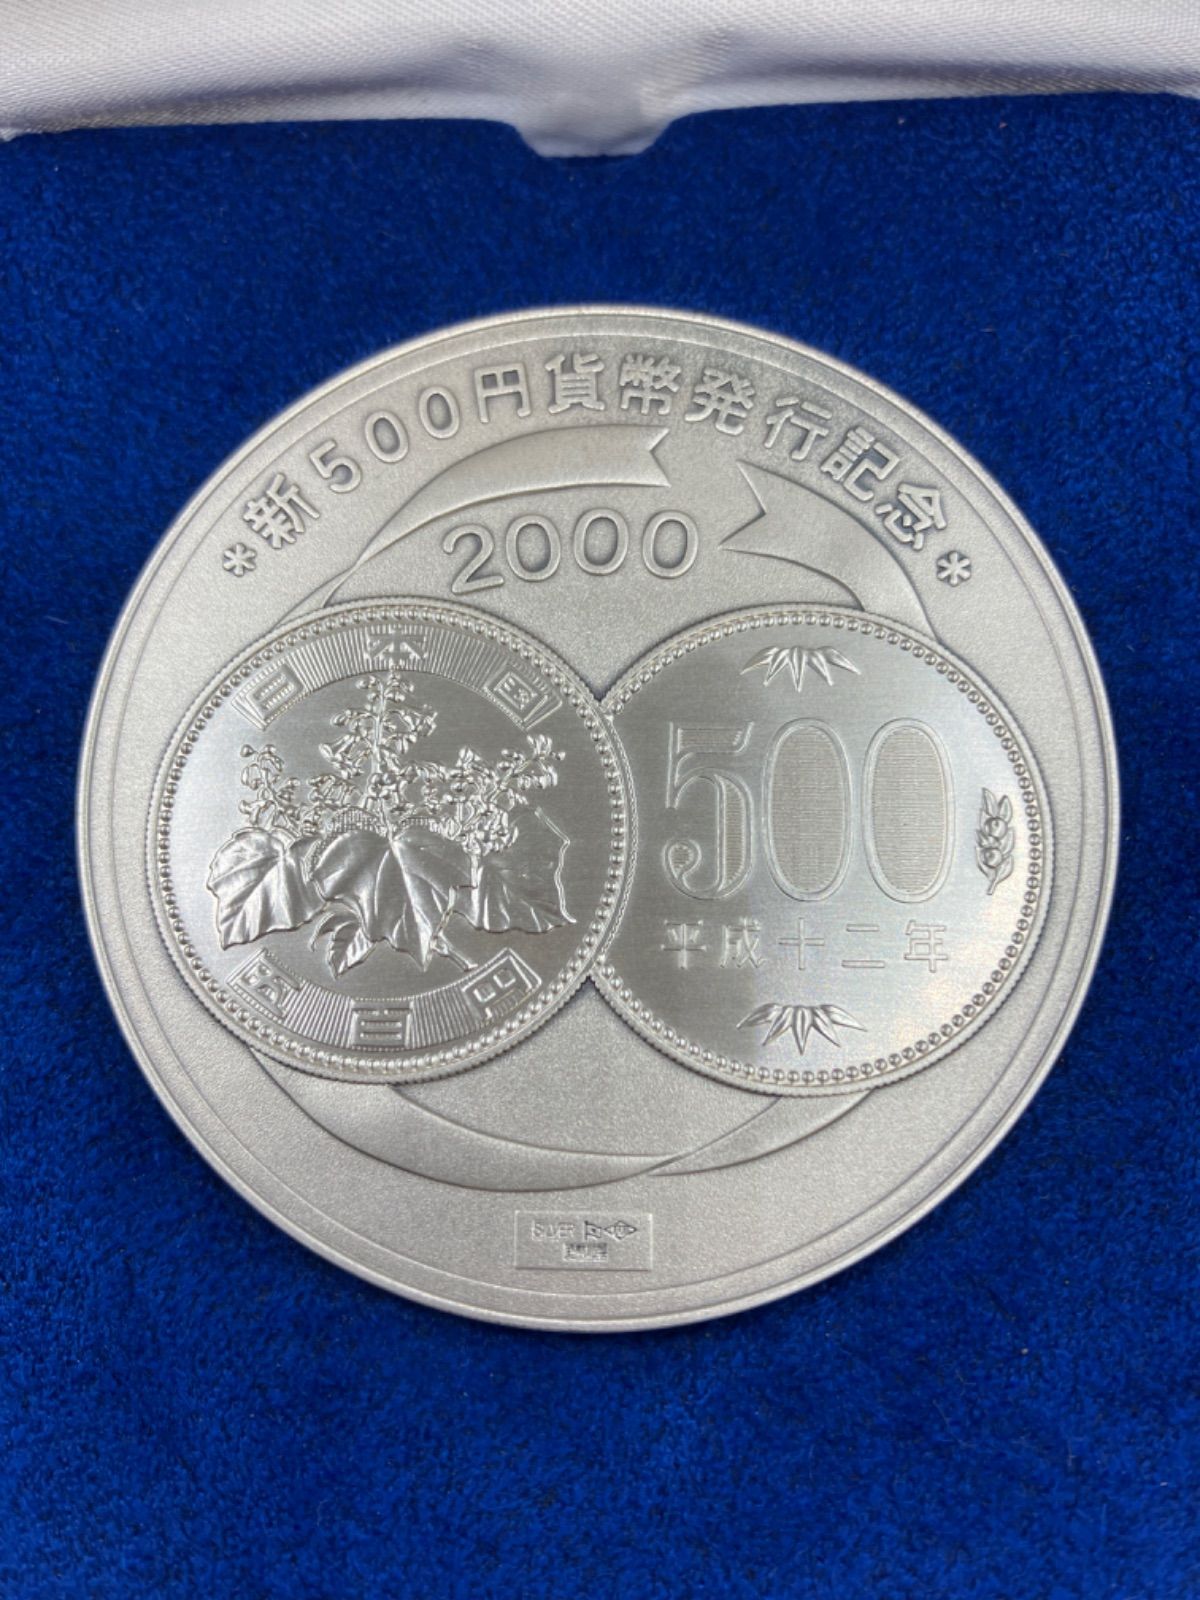 造幣局製 新500円貨幣発行記念メダル | www.fitwellind.com